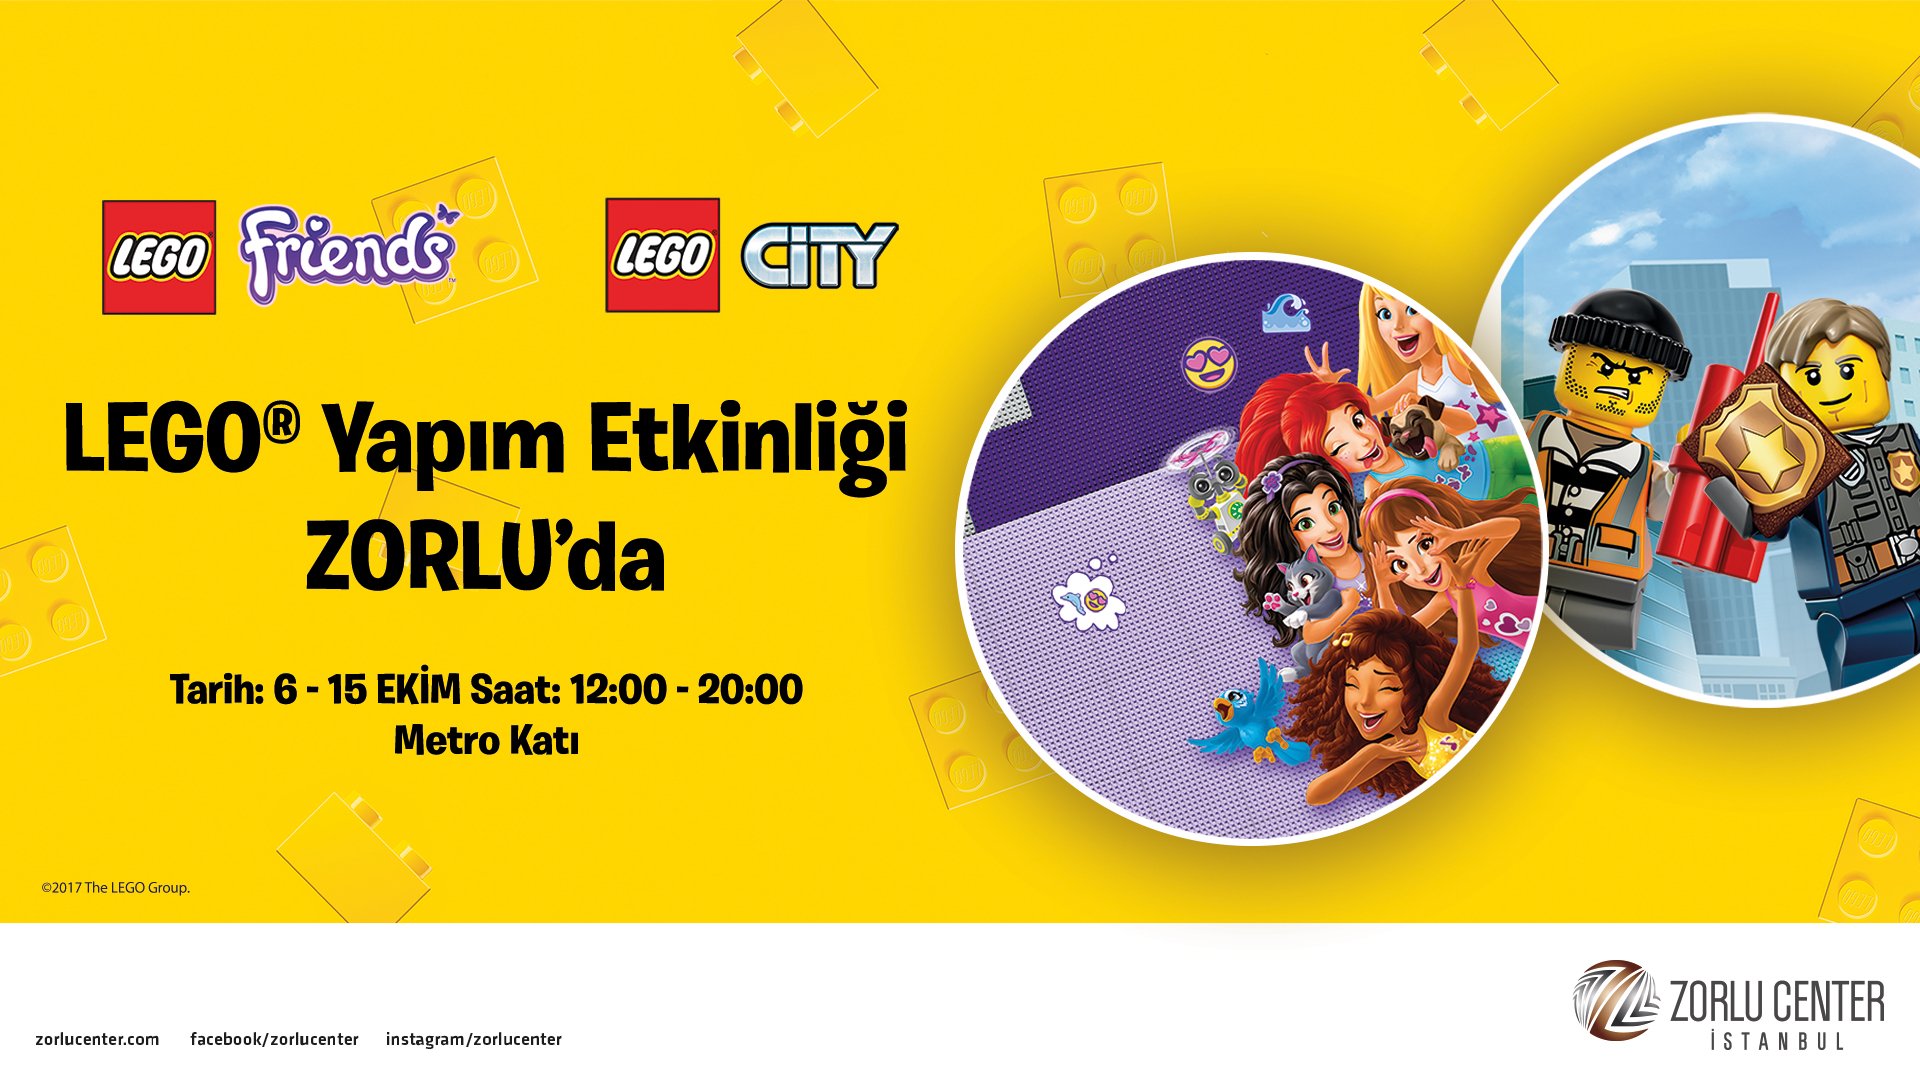 Любители Лего смогут насладиться сбором конструктора в Стамбуле с 6 октября